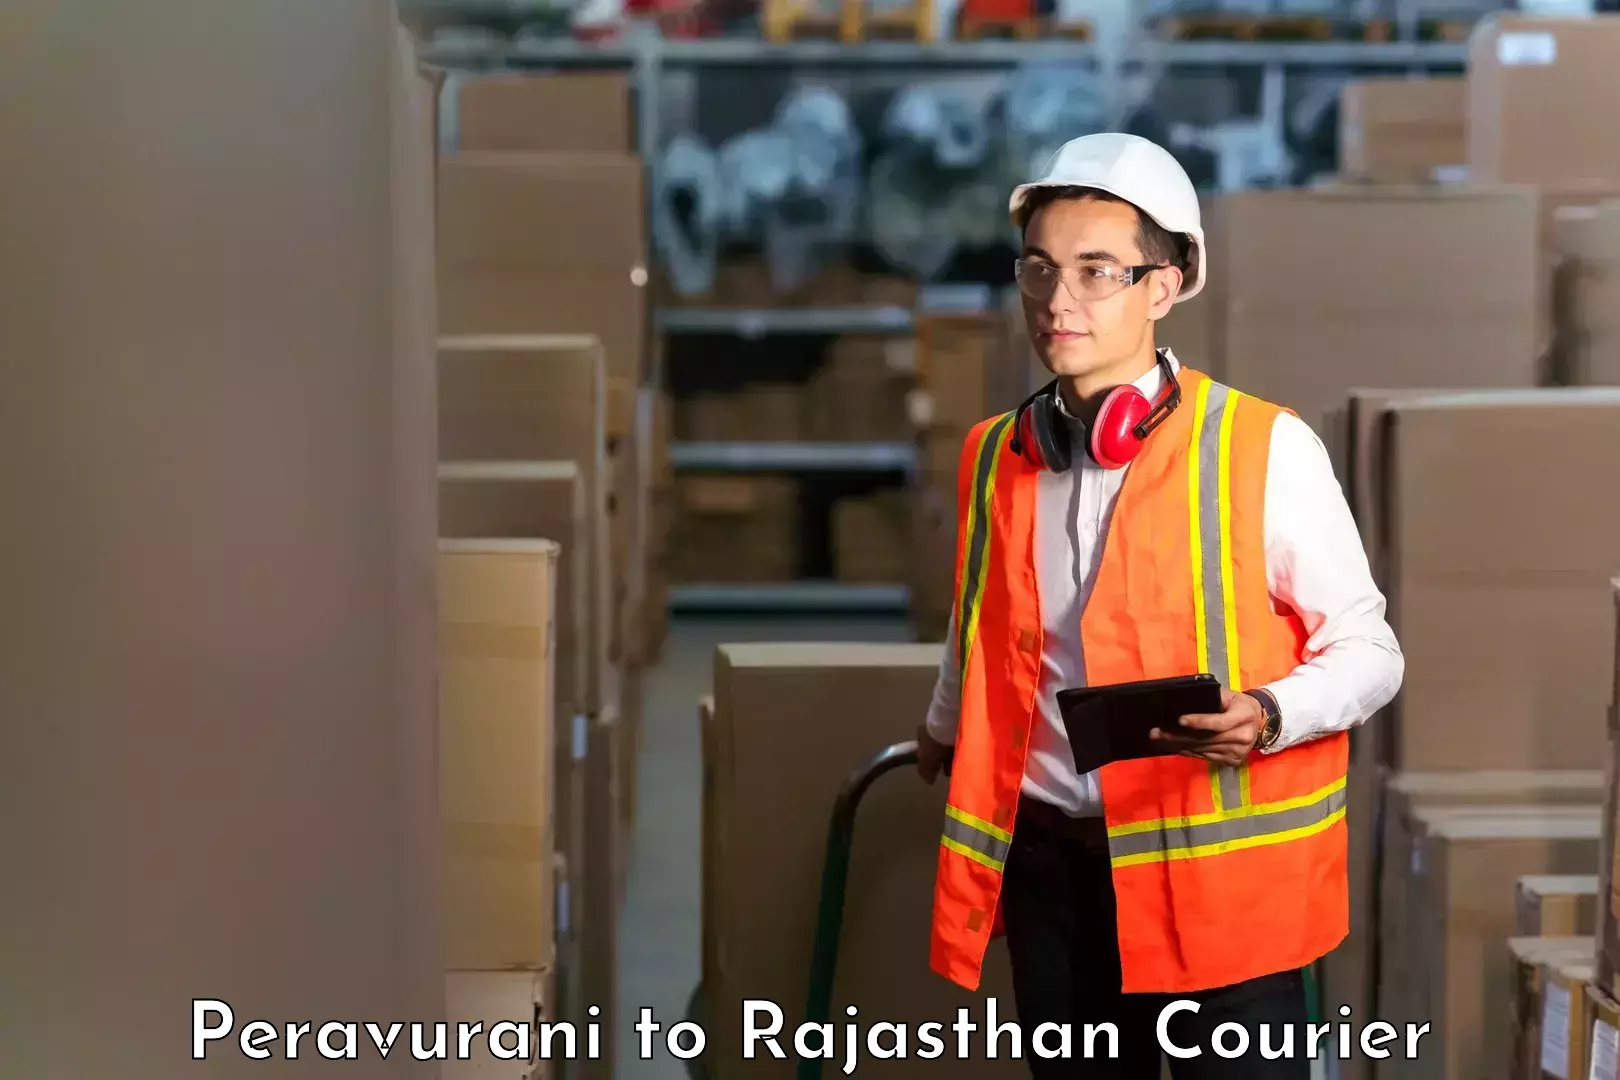 Door-to-door freight service Peravurani to Rajasthan